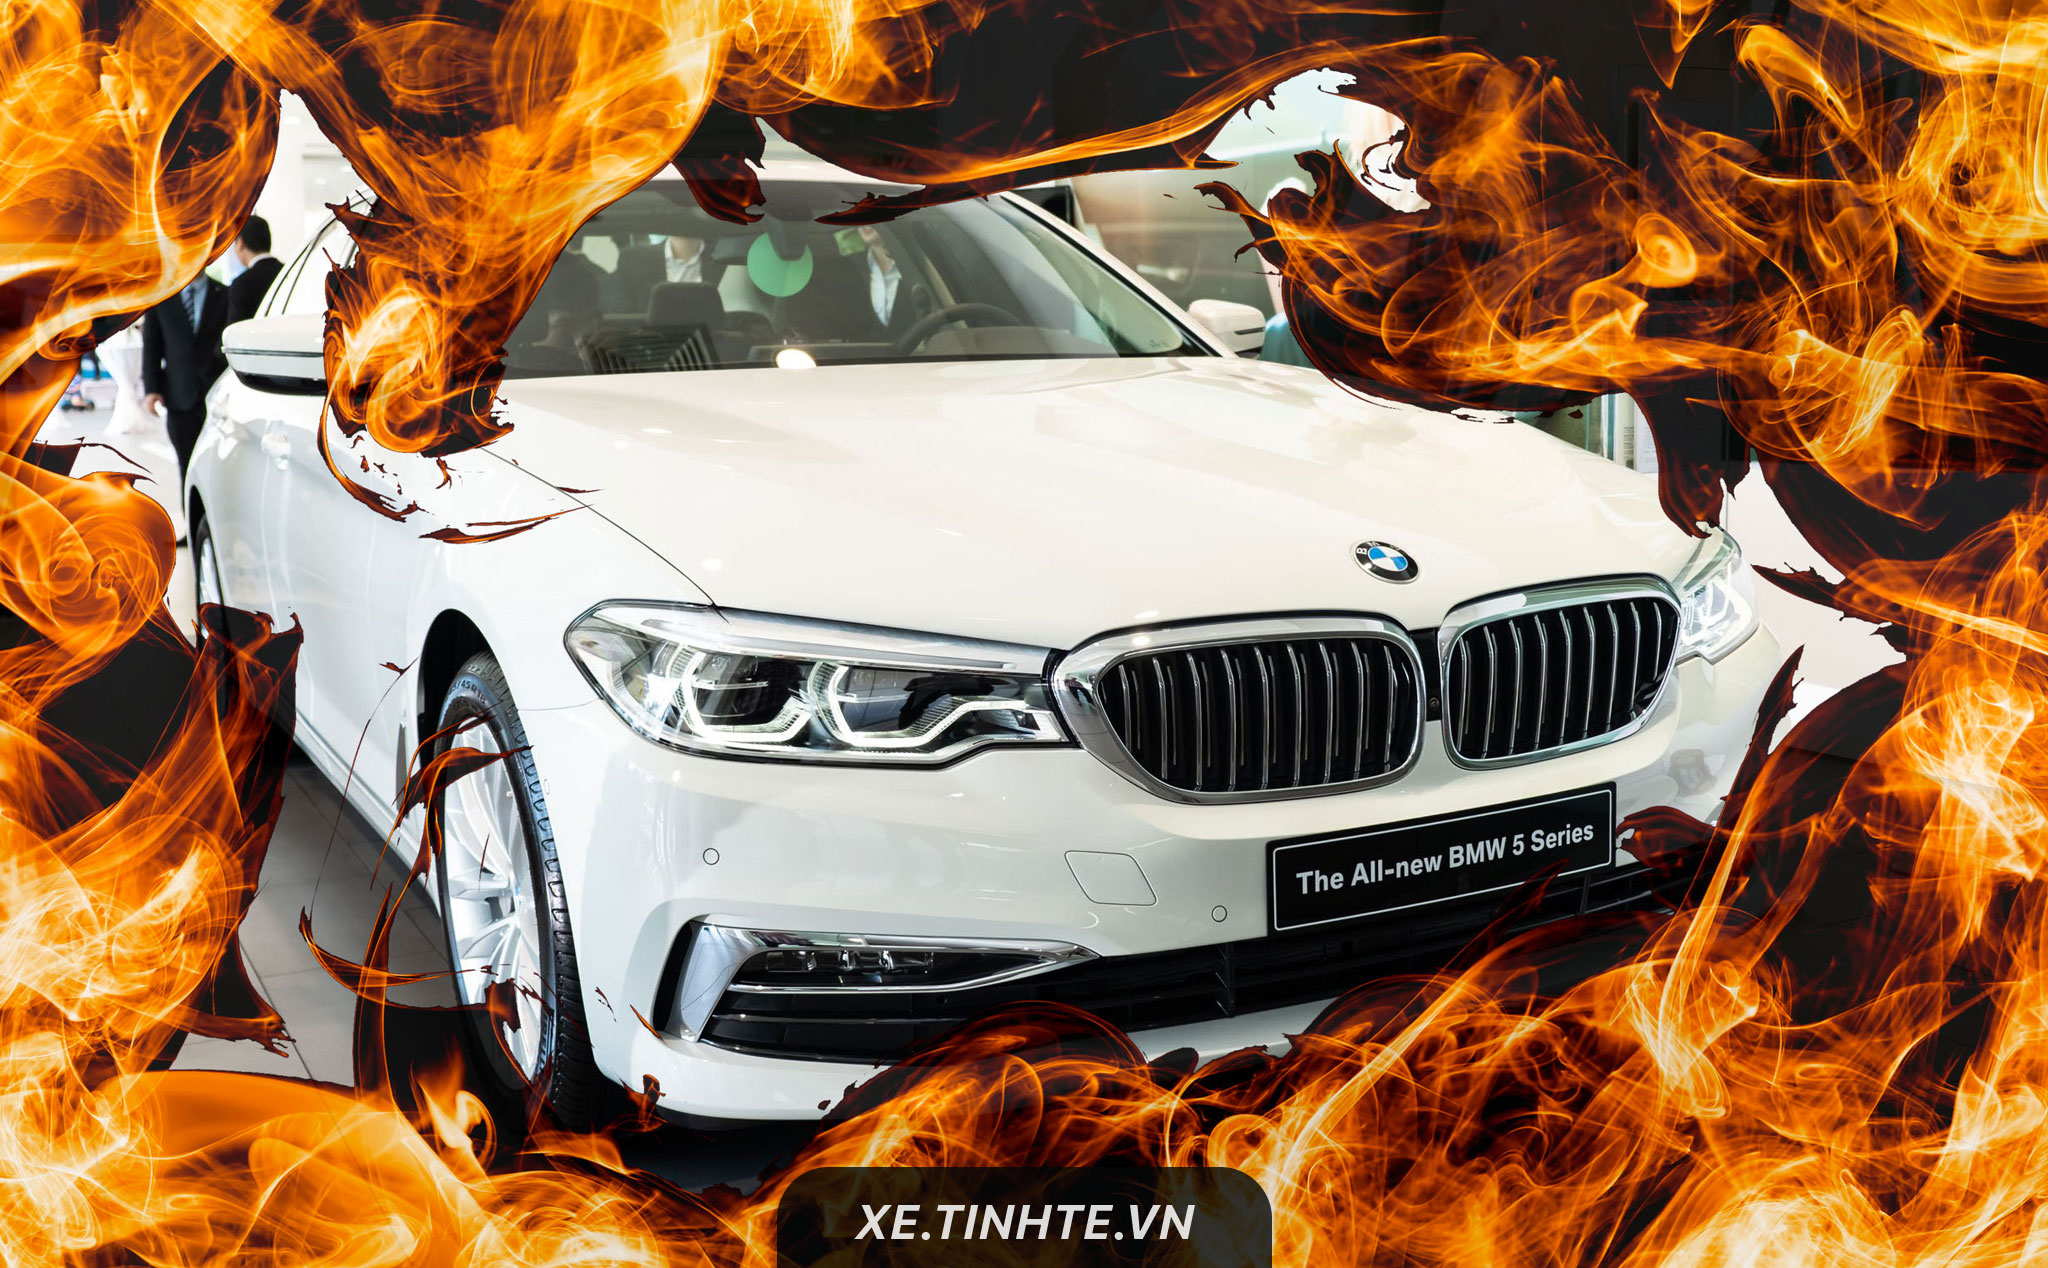 BMW đã triệu hồi hàng triệu xe vì các sự cố khác nhau có thể dẫn đến cháy nổ